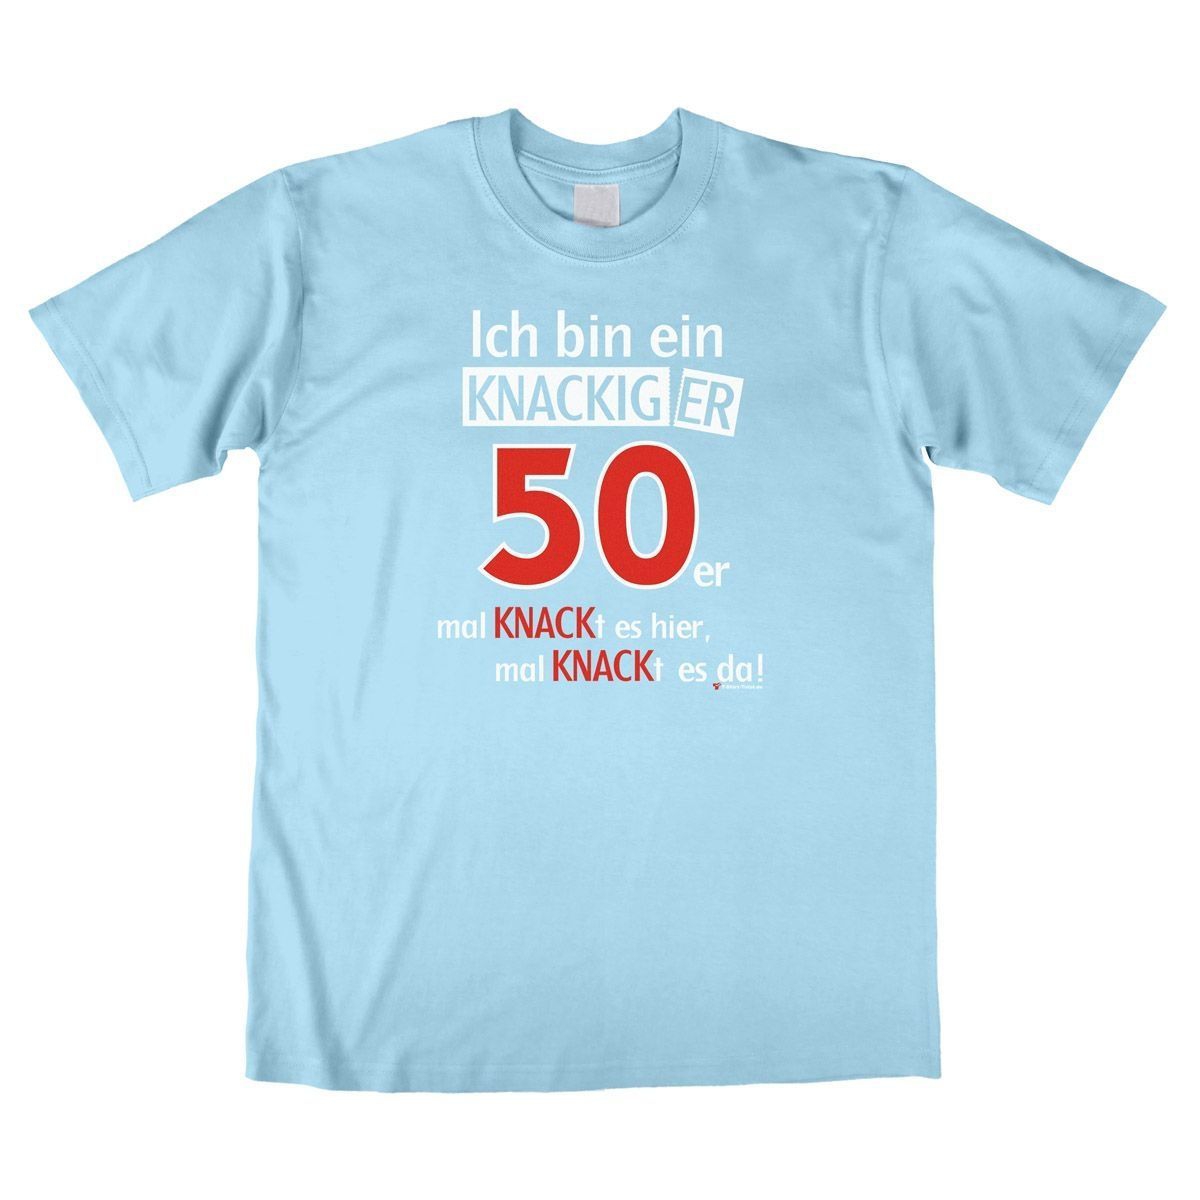 Knackiger 50er Unisex T-Shirt hellblau Extra Large